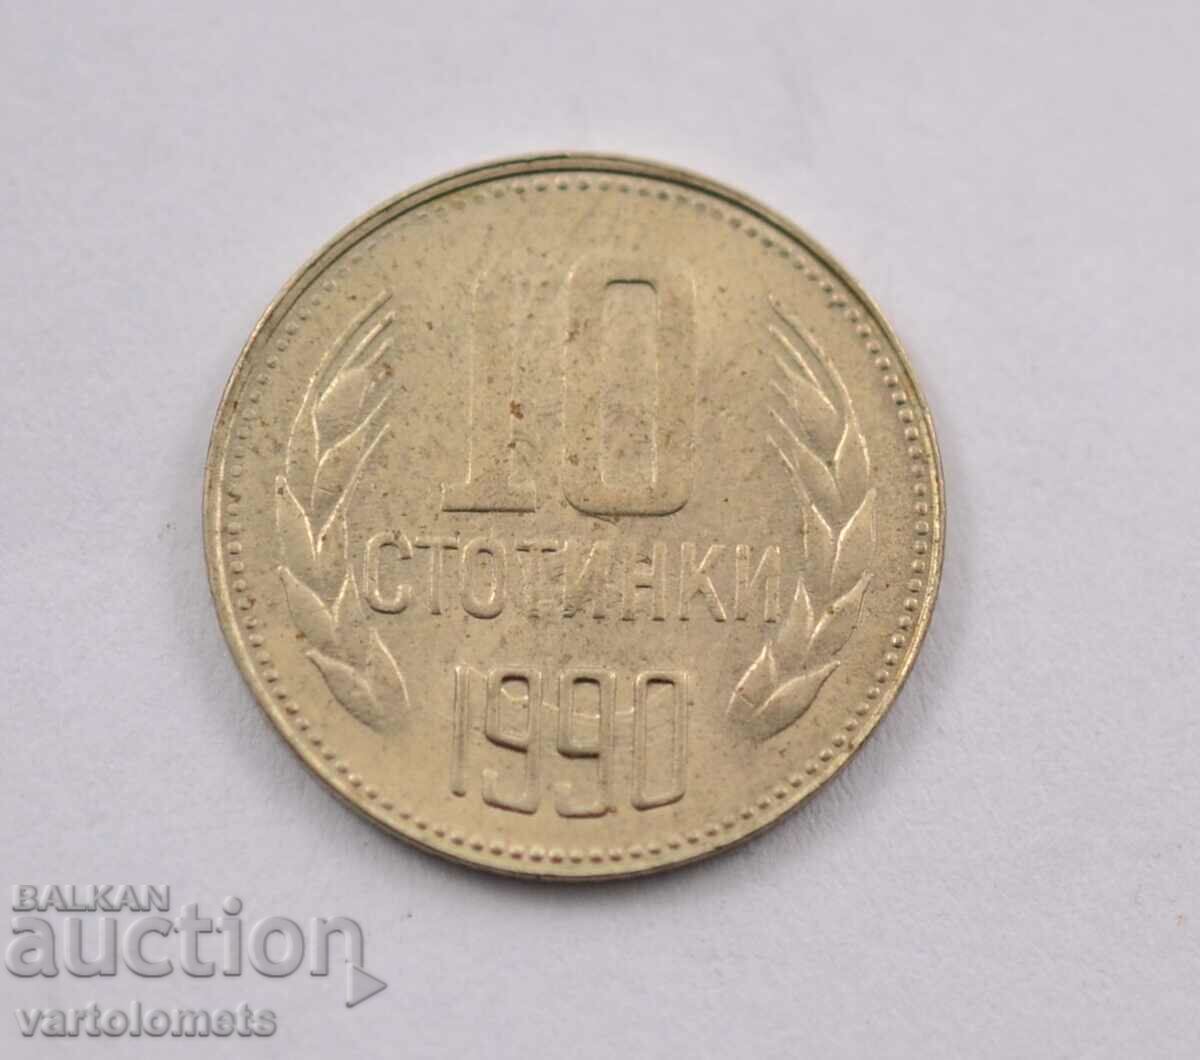 10 σεντ 1990 - Βουλγαρία